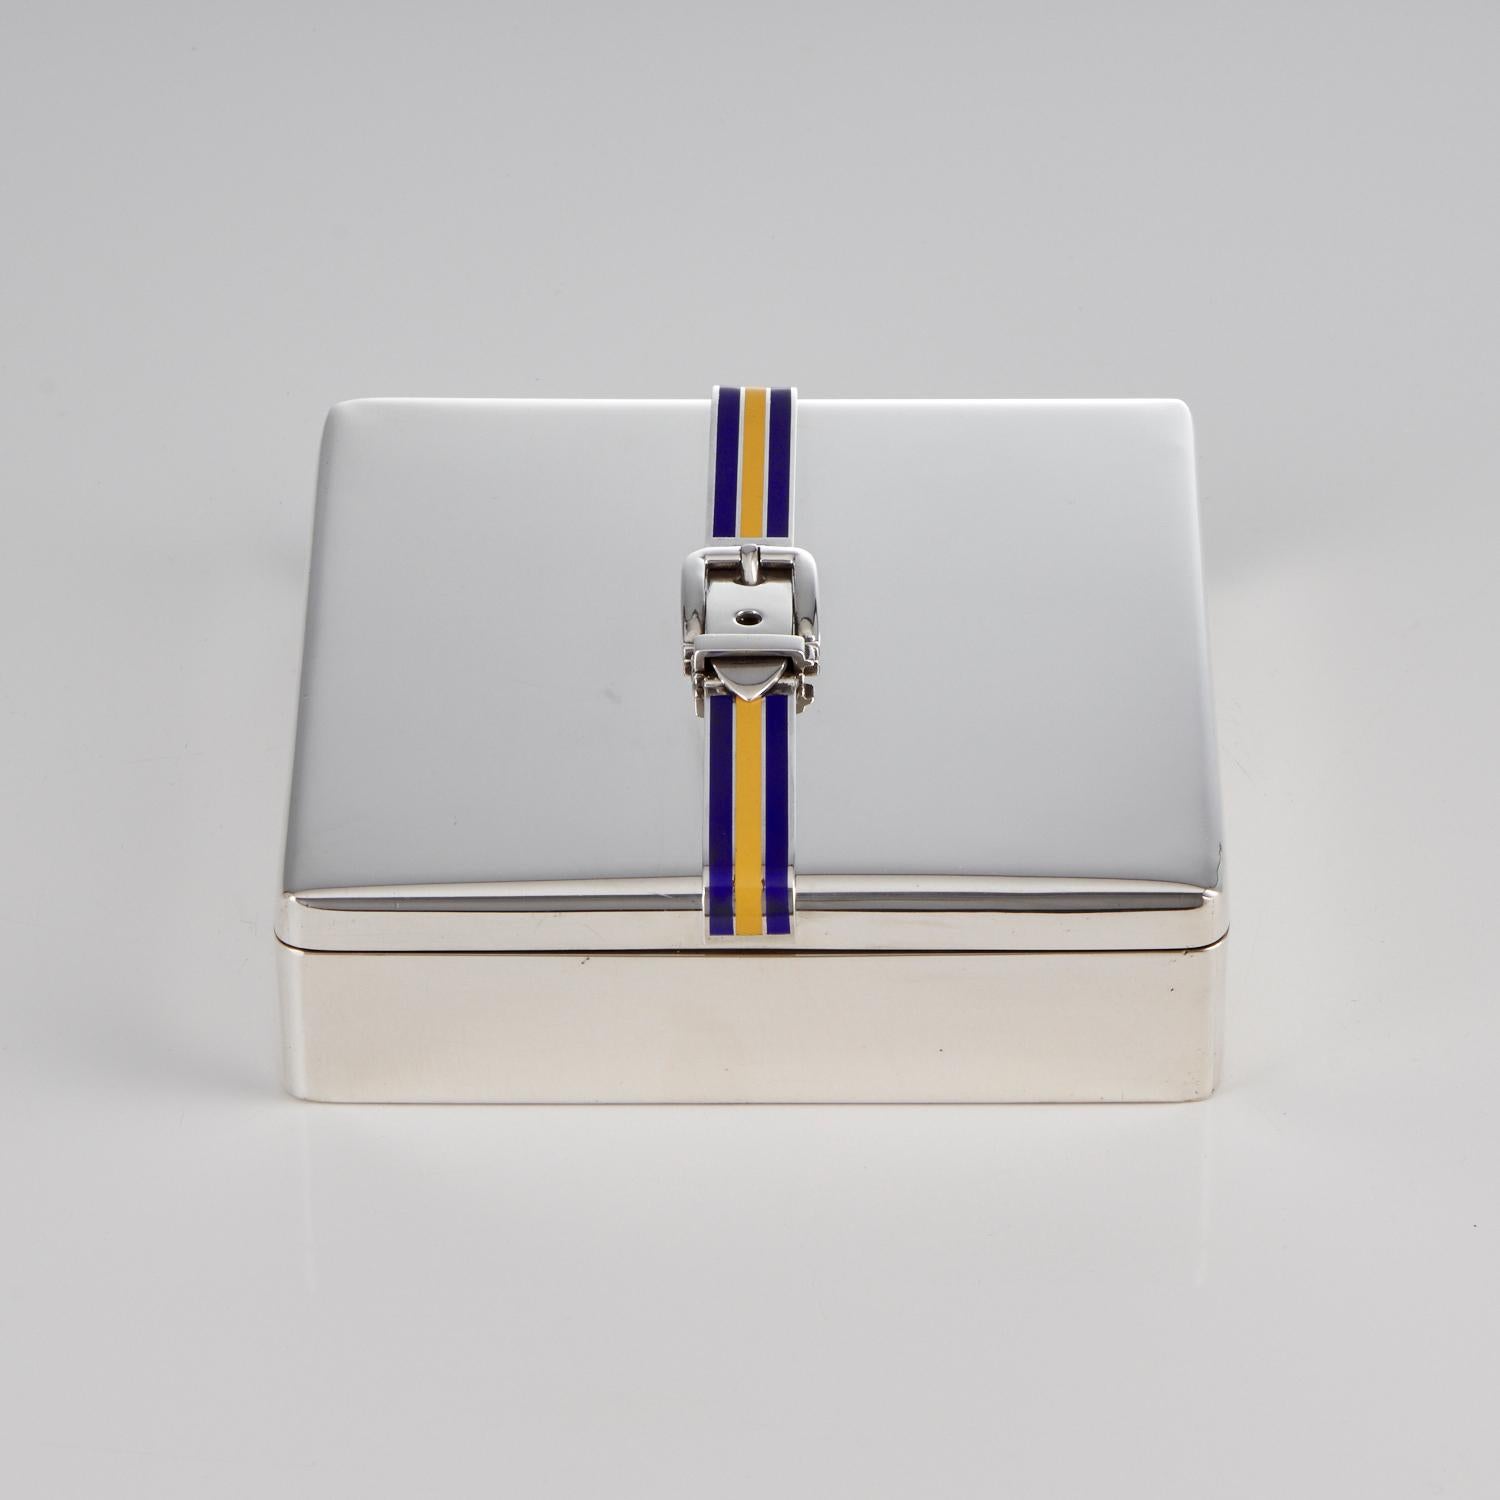 Eine italienische Dose aus 925er Sterlingsilber und Emaille, um 1960

Diese Box besticht durch Qualität und Design. Sowohl das Silber und Emaille sind in einwandfreiem Zustand und die Schnalle Dekoration ist so realistisch, dass es den Anschein